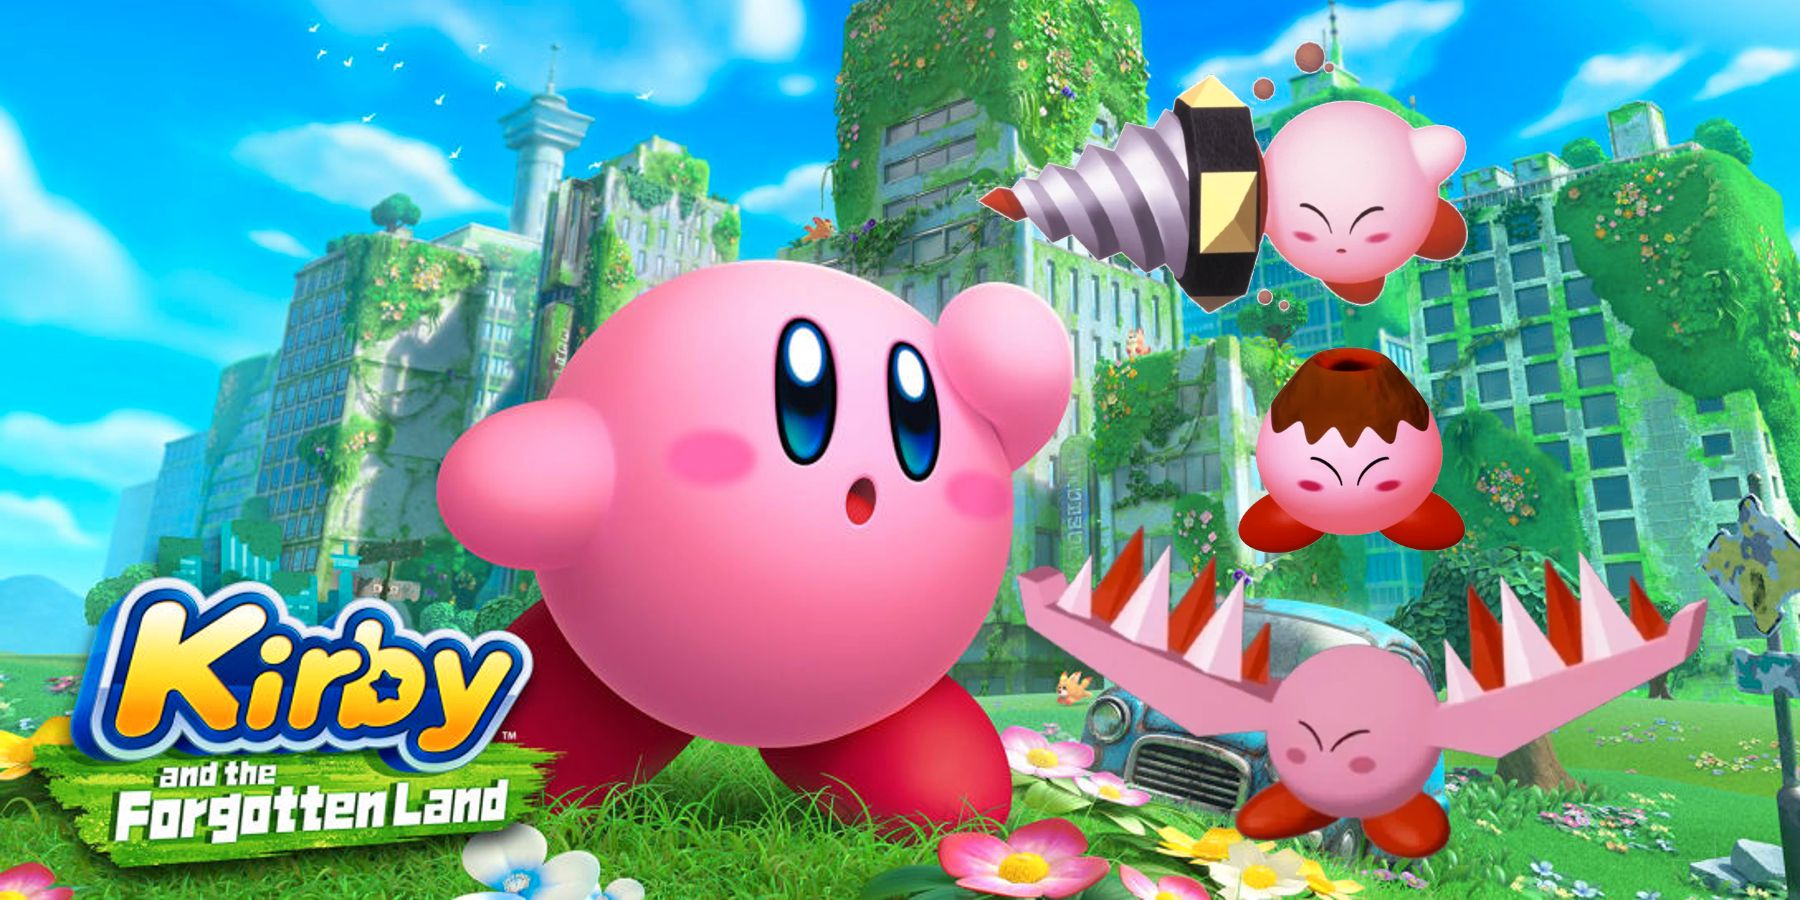 Kirbynek és az elfeledett földnek vissza kell hoznia a kristályszilánkok képességkeverését